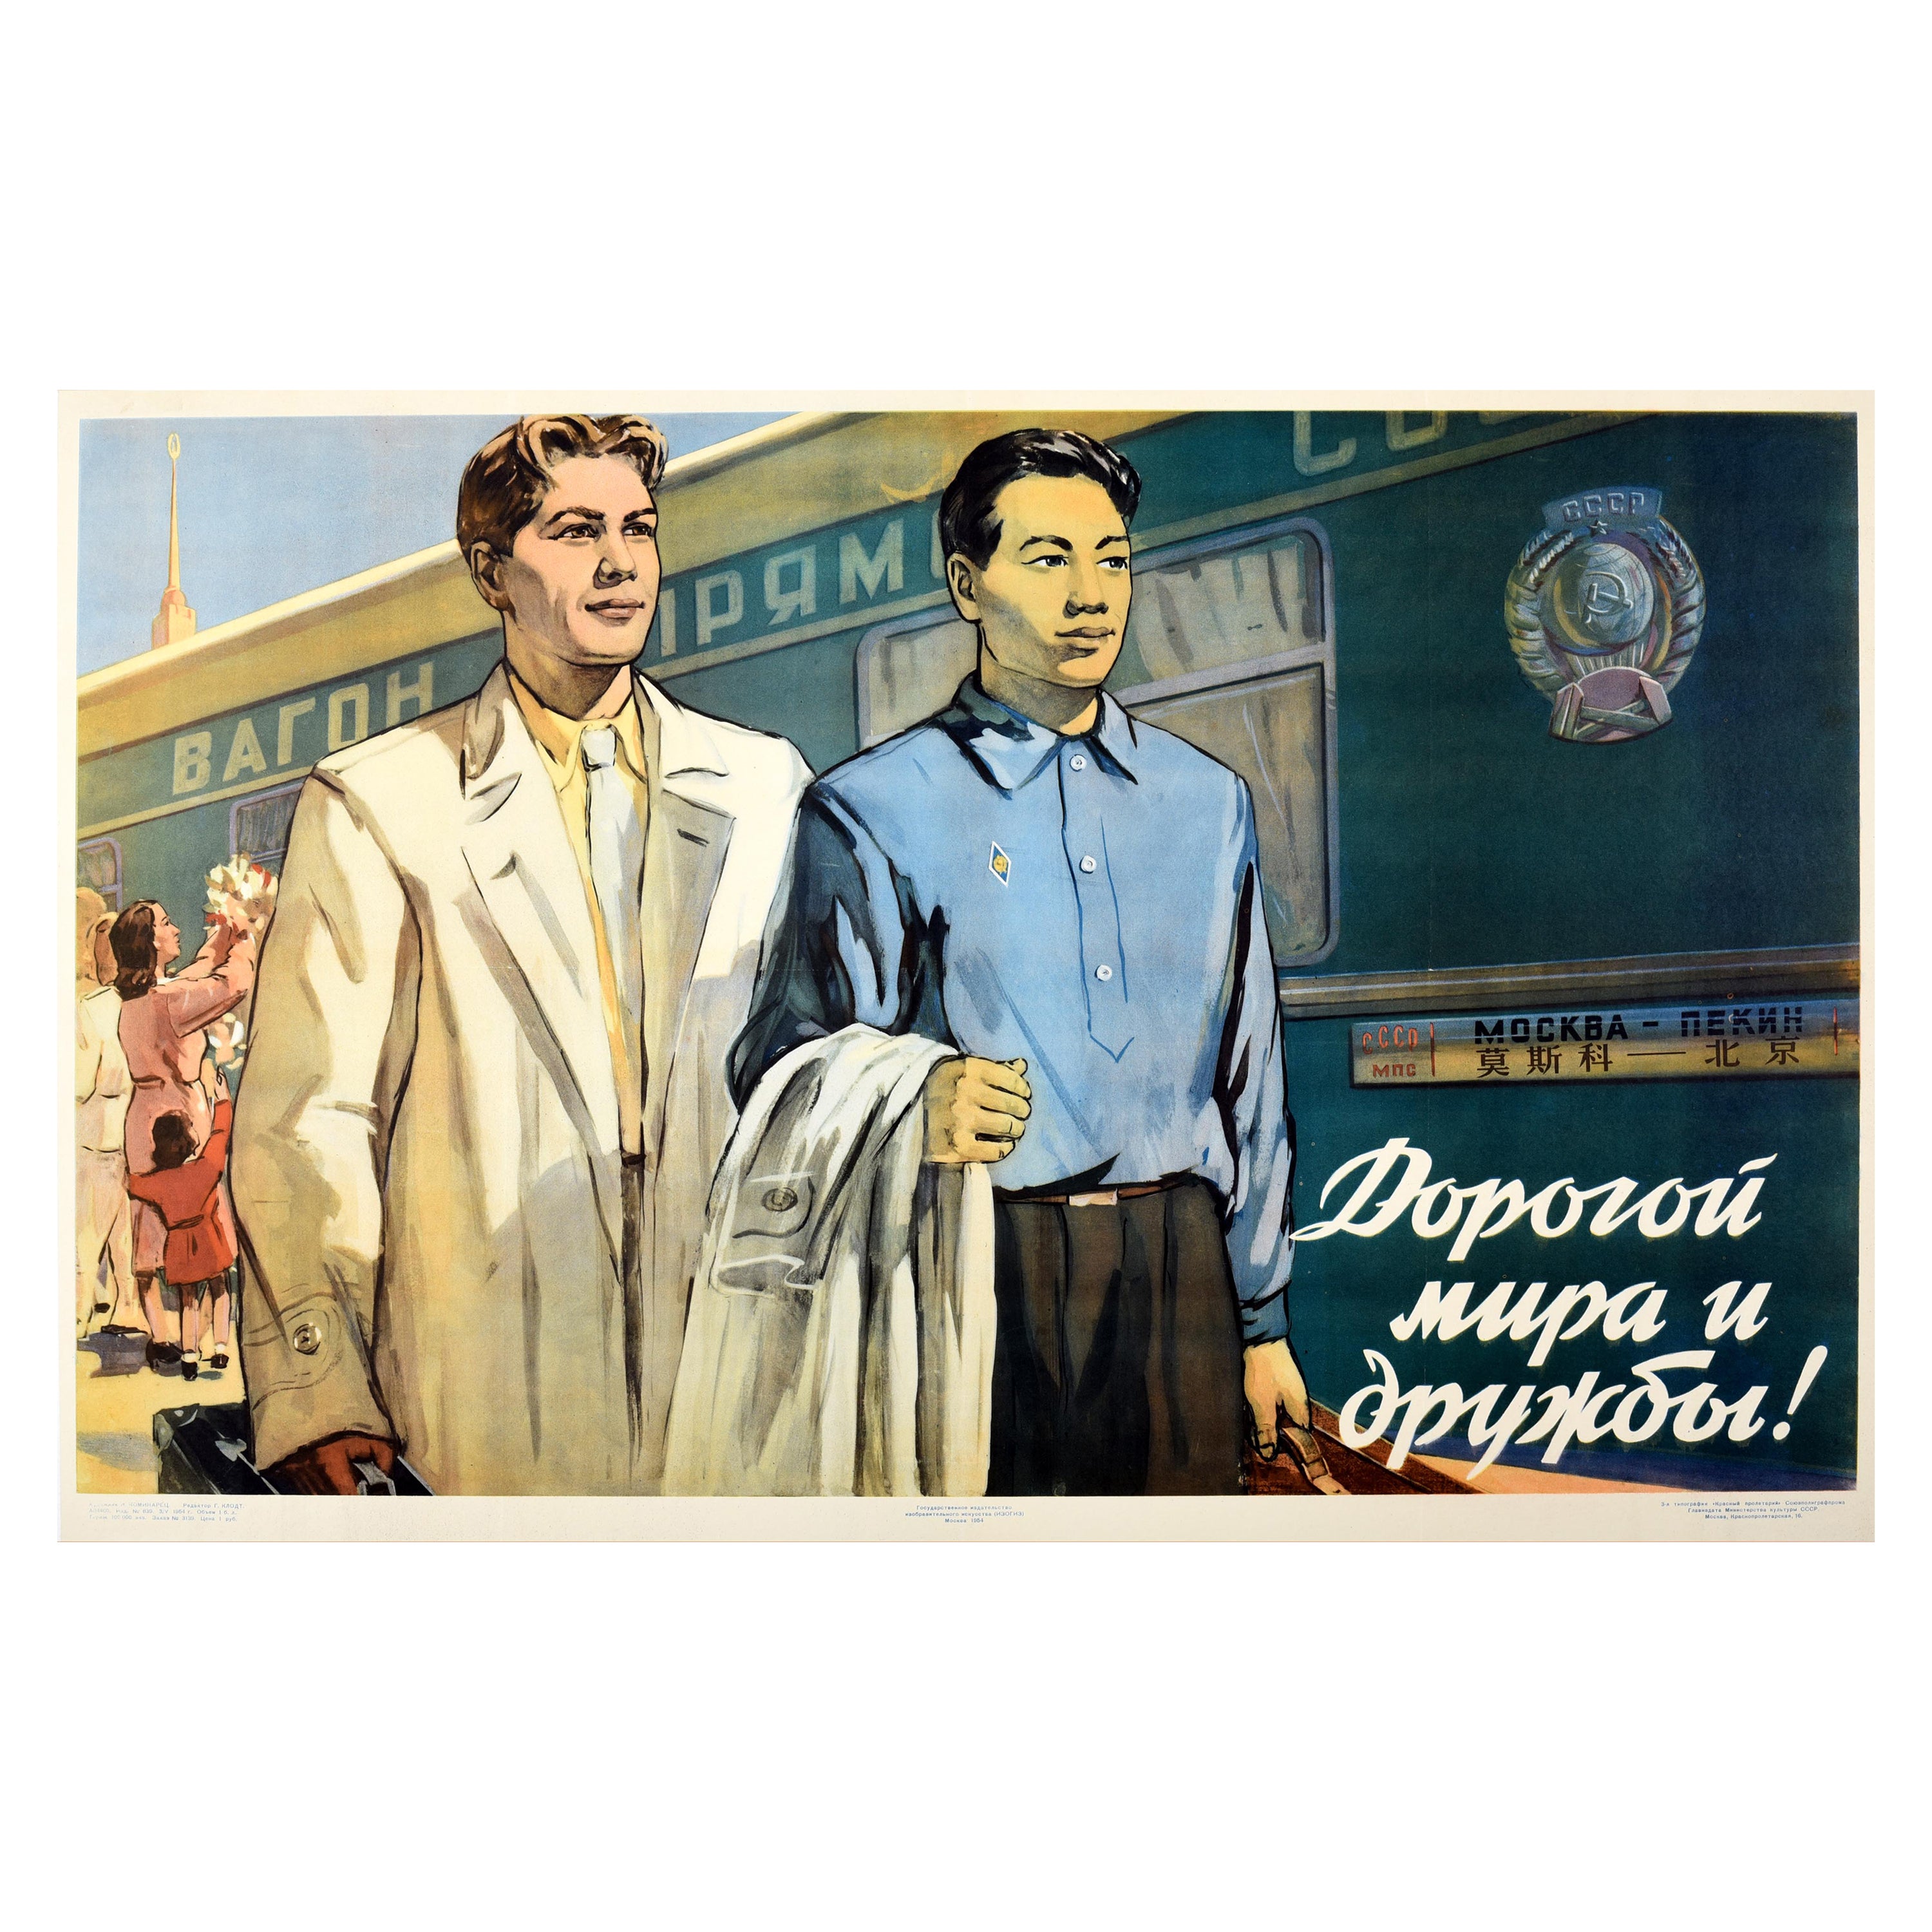 Affiche rétro originale de propagande soviétique de Moscou, Pékin, URSS, amitié avec la Chine